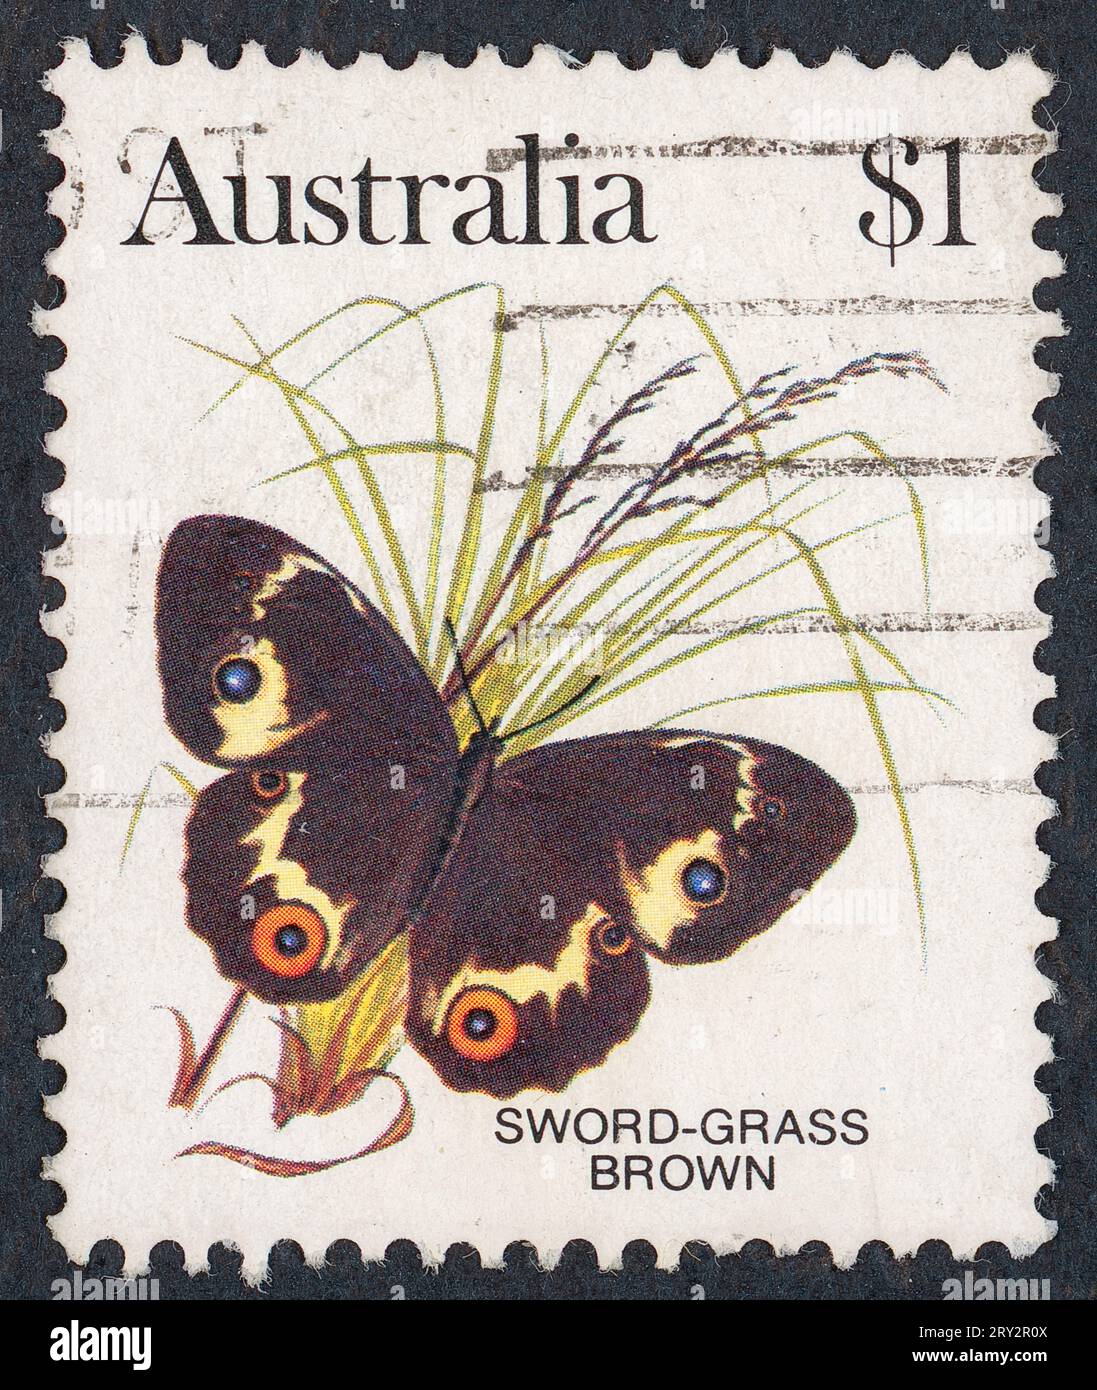 Schwertgras braun (Tisiphone abeona). Australische Schmetterlingsserie. Briefmarke, ausgestellt 1983 in Australien. Stockfoto